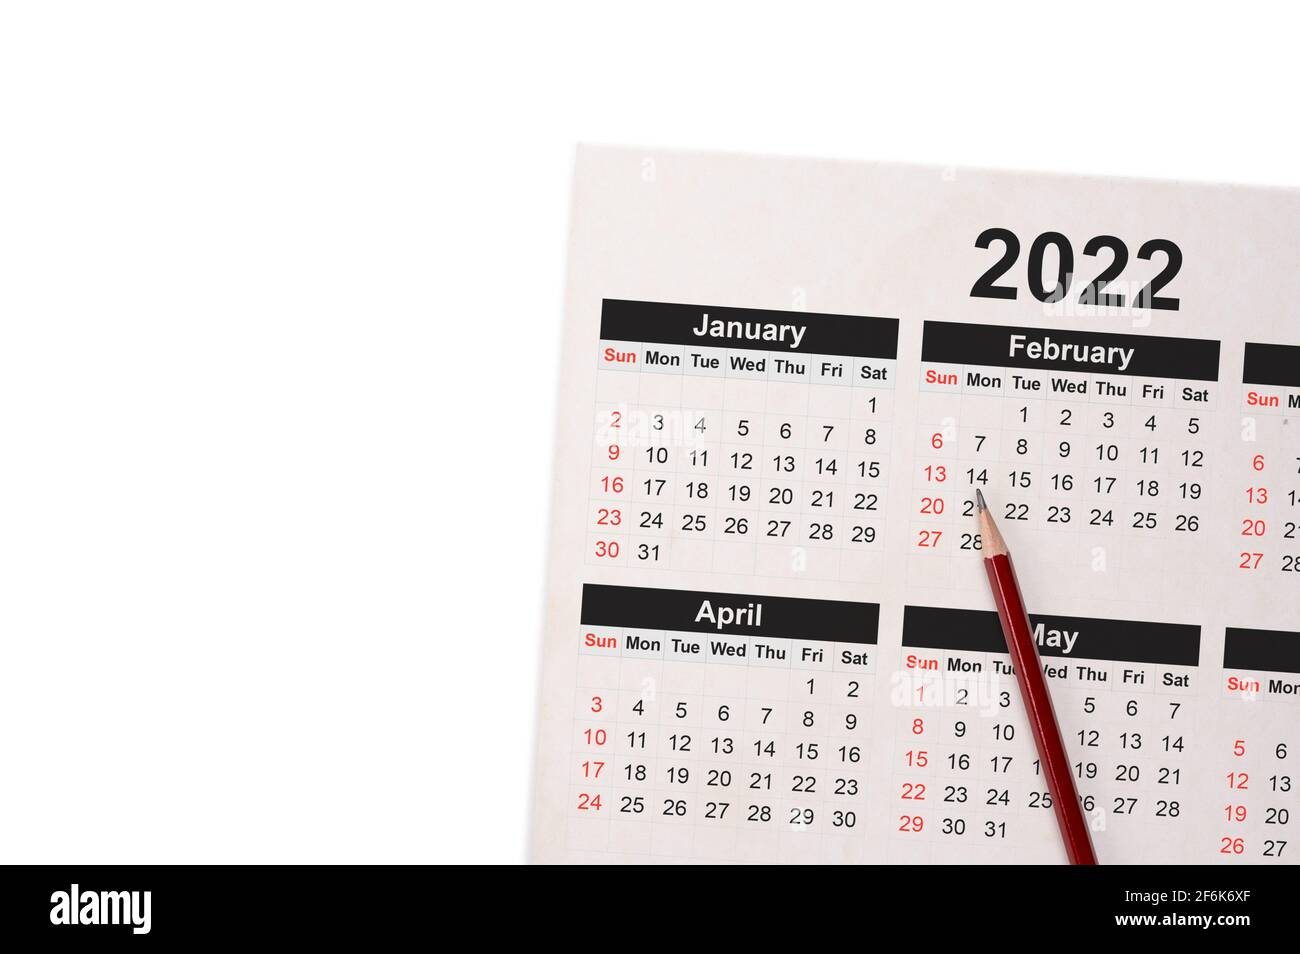 Calendar Of Event April 2-6 2022 - November Calendar 2022